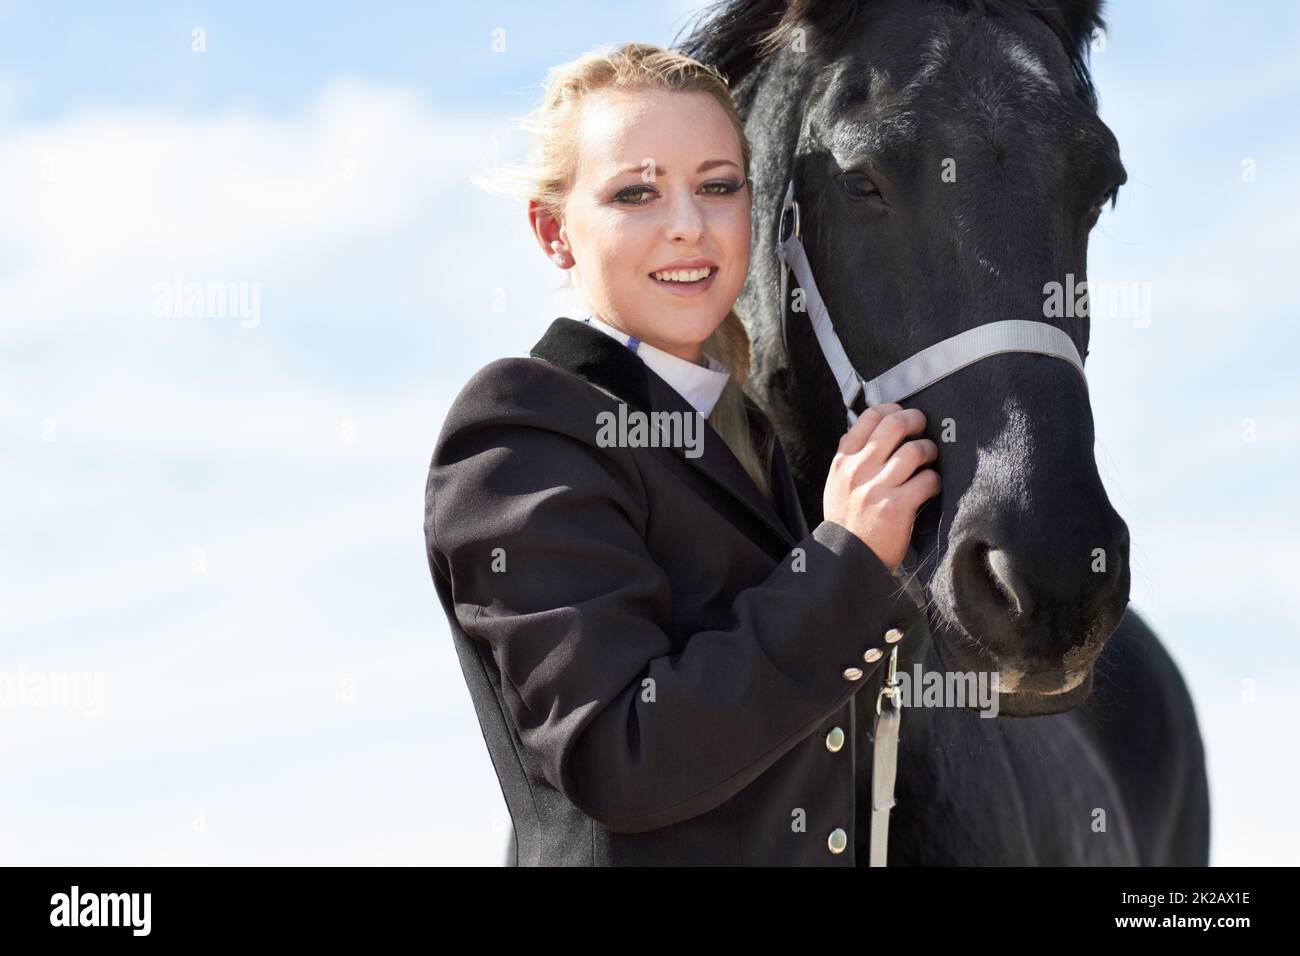 Die Verbindung zwischen Reiter und Pferd. Porträt einer jungen Reiterin, die ihr Pferd liebevoll umarmt. Stockfoto